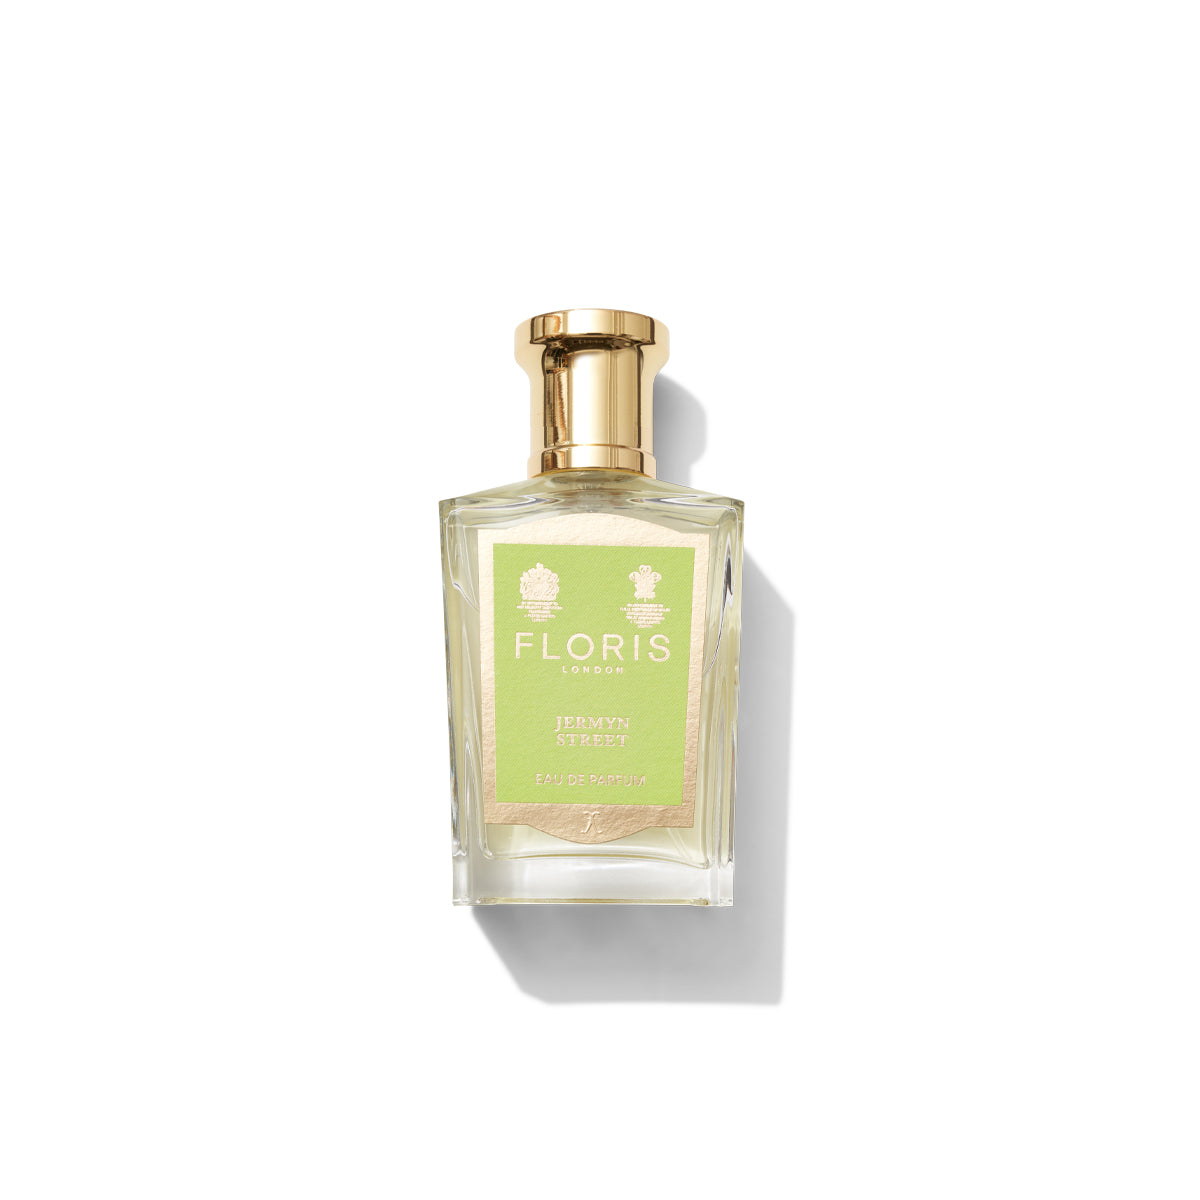 A glass bottle of Floris London Jermyn Street Eau de Parfum with a gold cap and a light green label.